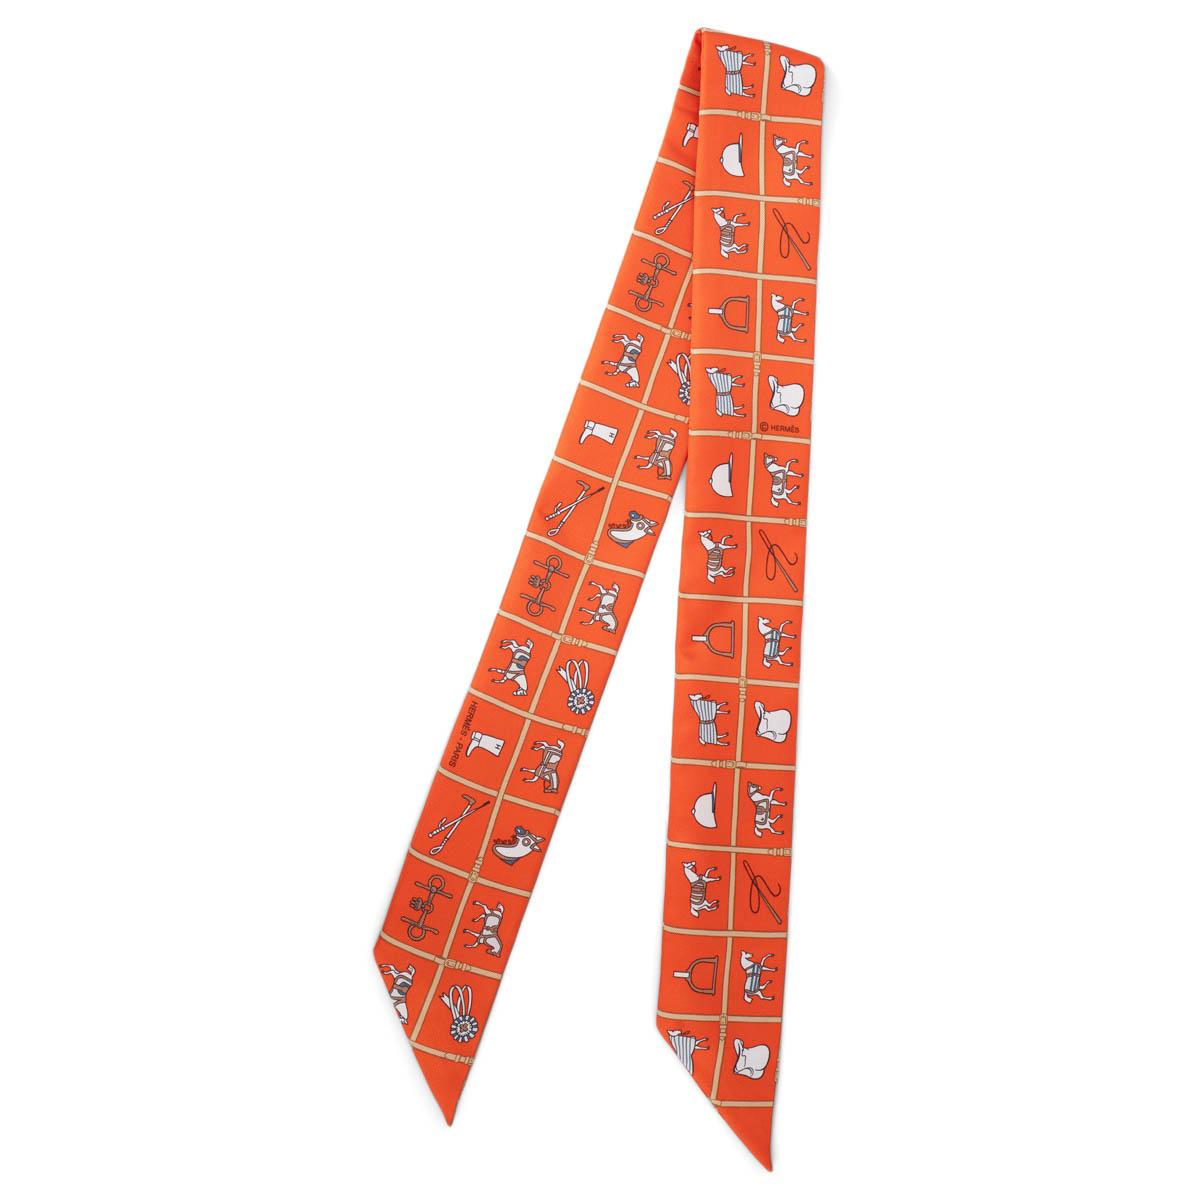 100% authentischer Hermès Couvertures et Tenues de Jour Seidentwilli in Orange, Beige und Weiß. Wurde getragen und ist in ausgezeichnetem Zustand.  

Messungen
Breite	5cm (2in)
Länge	86cm (33.5in)

Alle unsere Angebote umfassen nur den aufgeführten